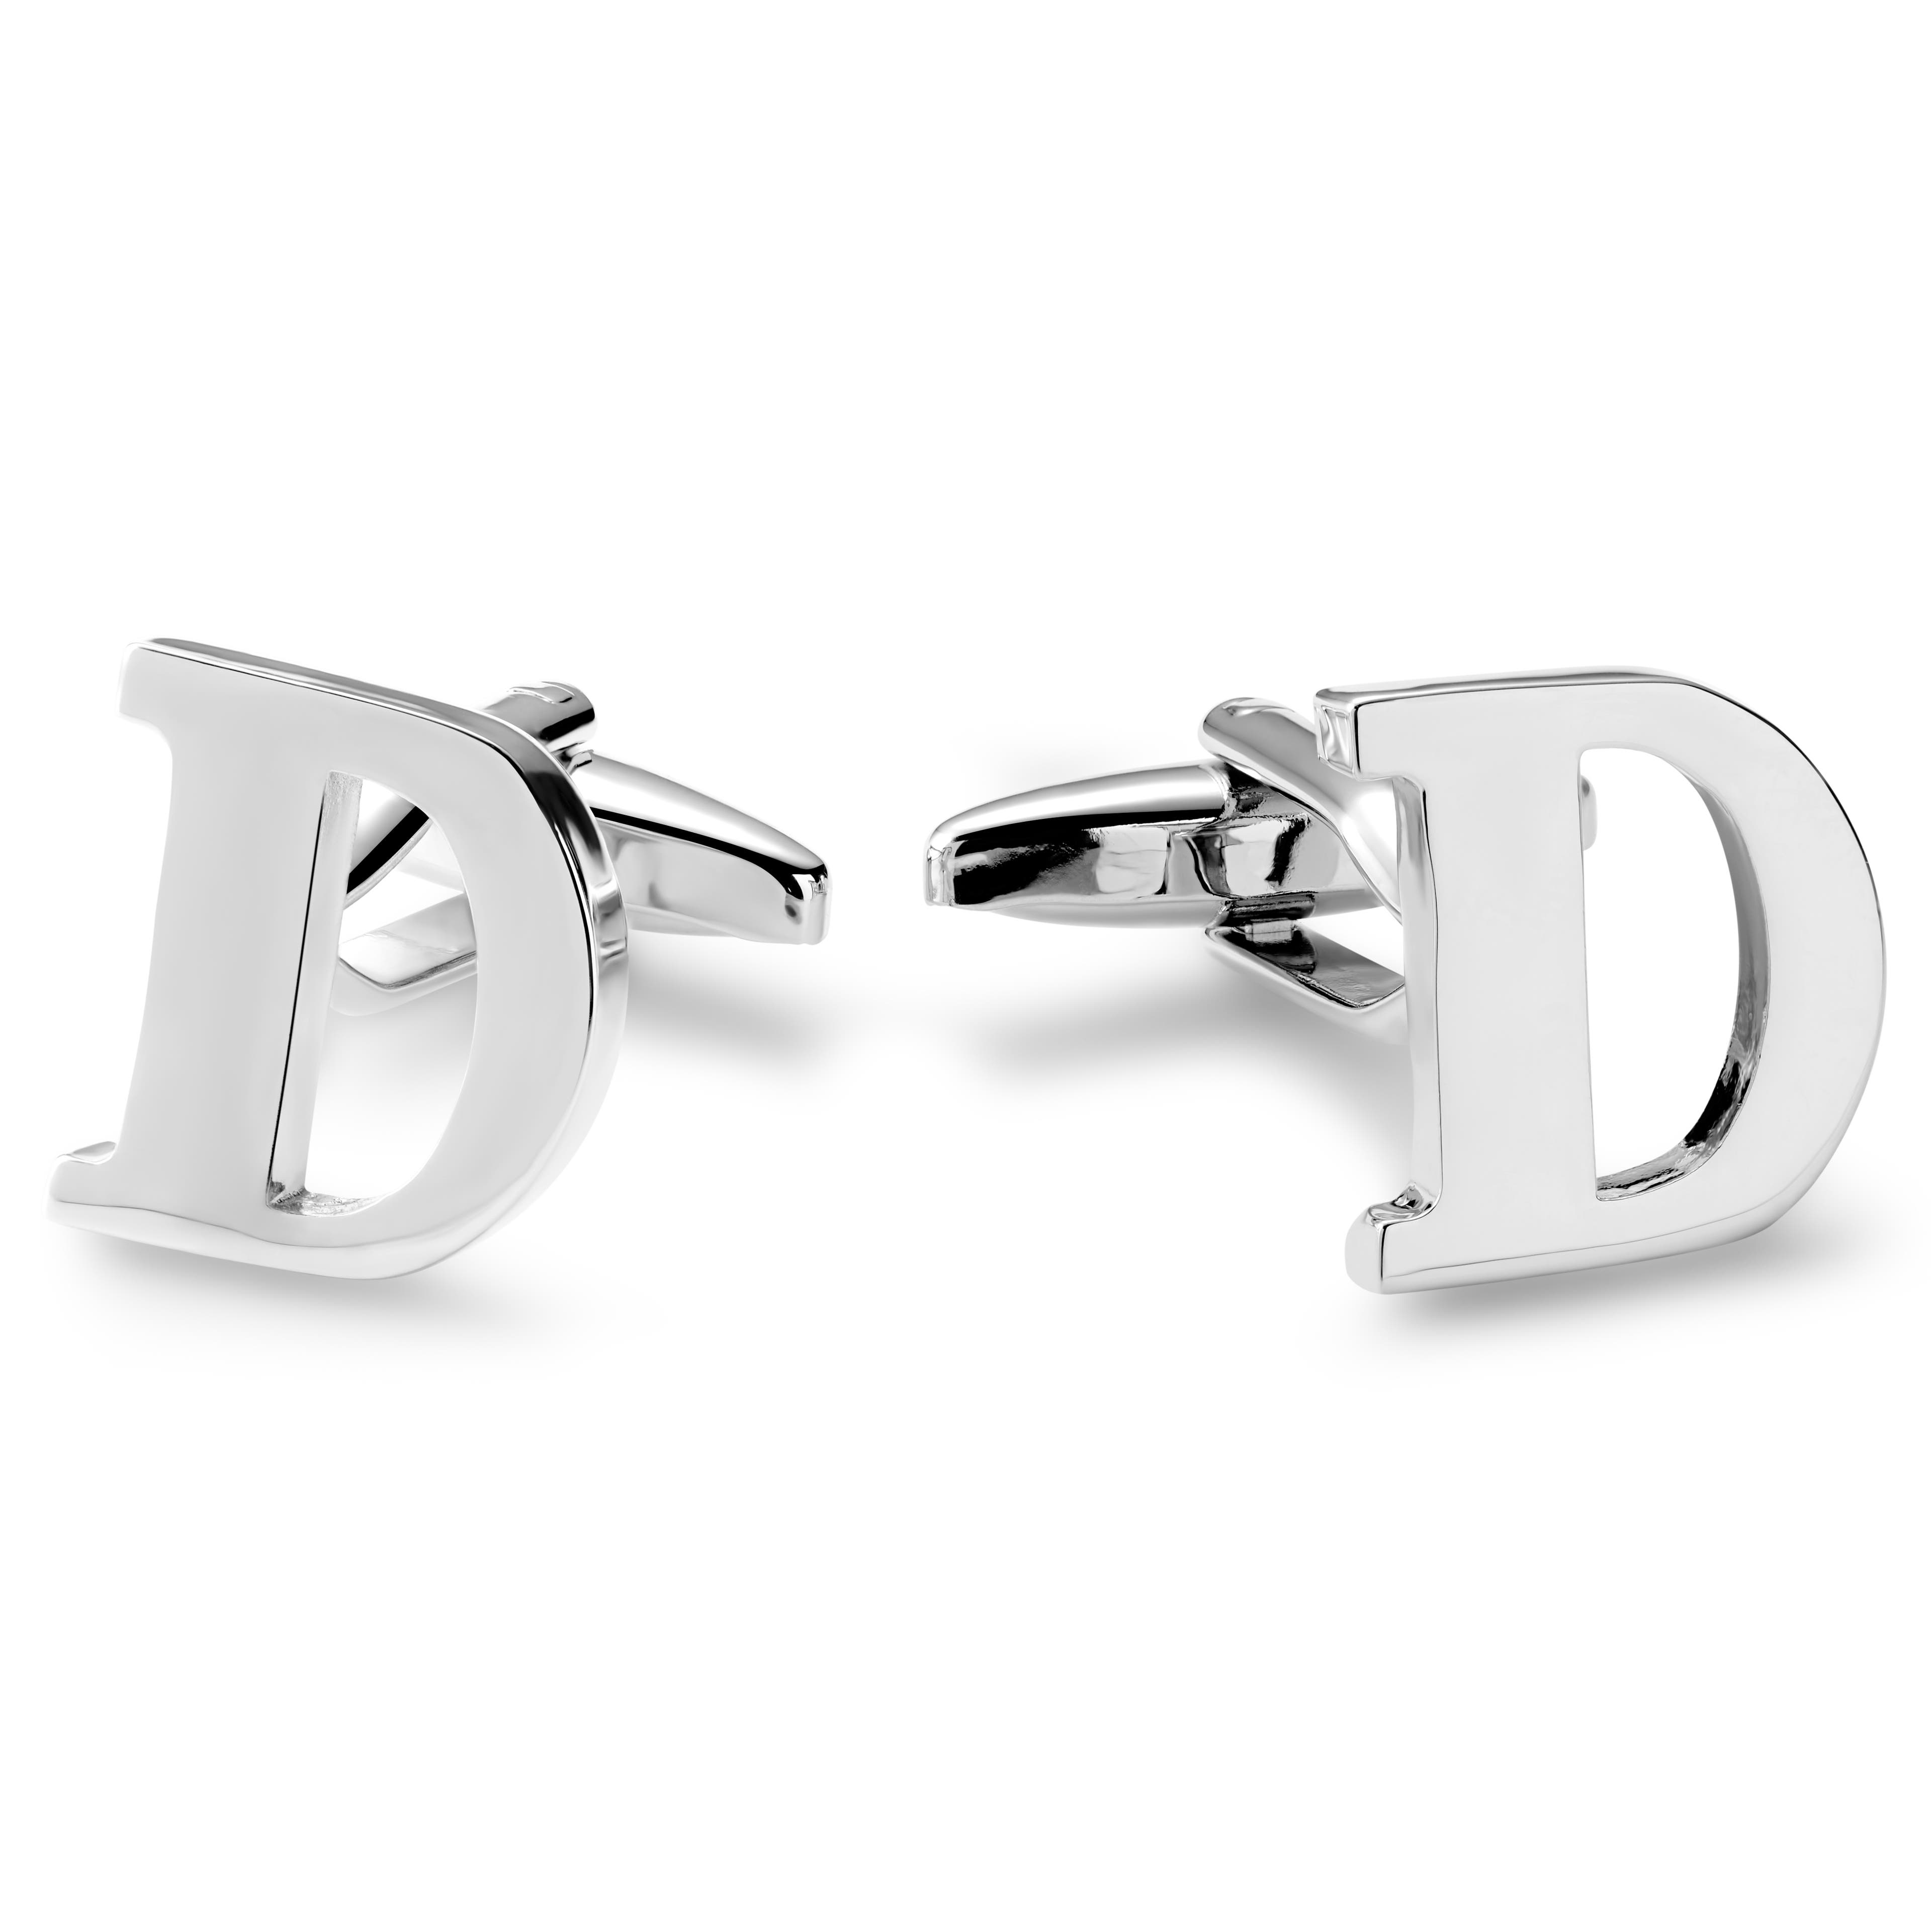 Manžetové knoflíčky s iniciálou D ve stříbrné barvě